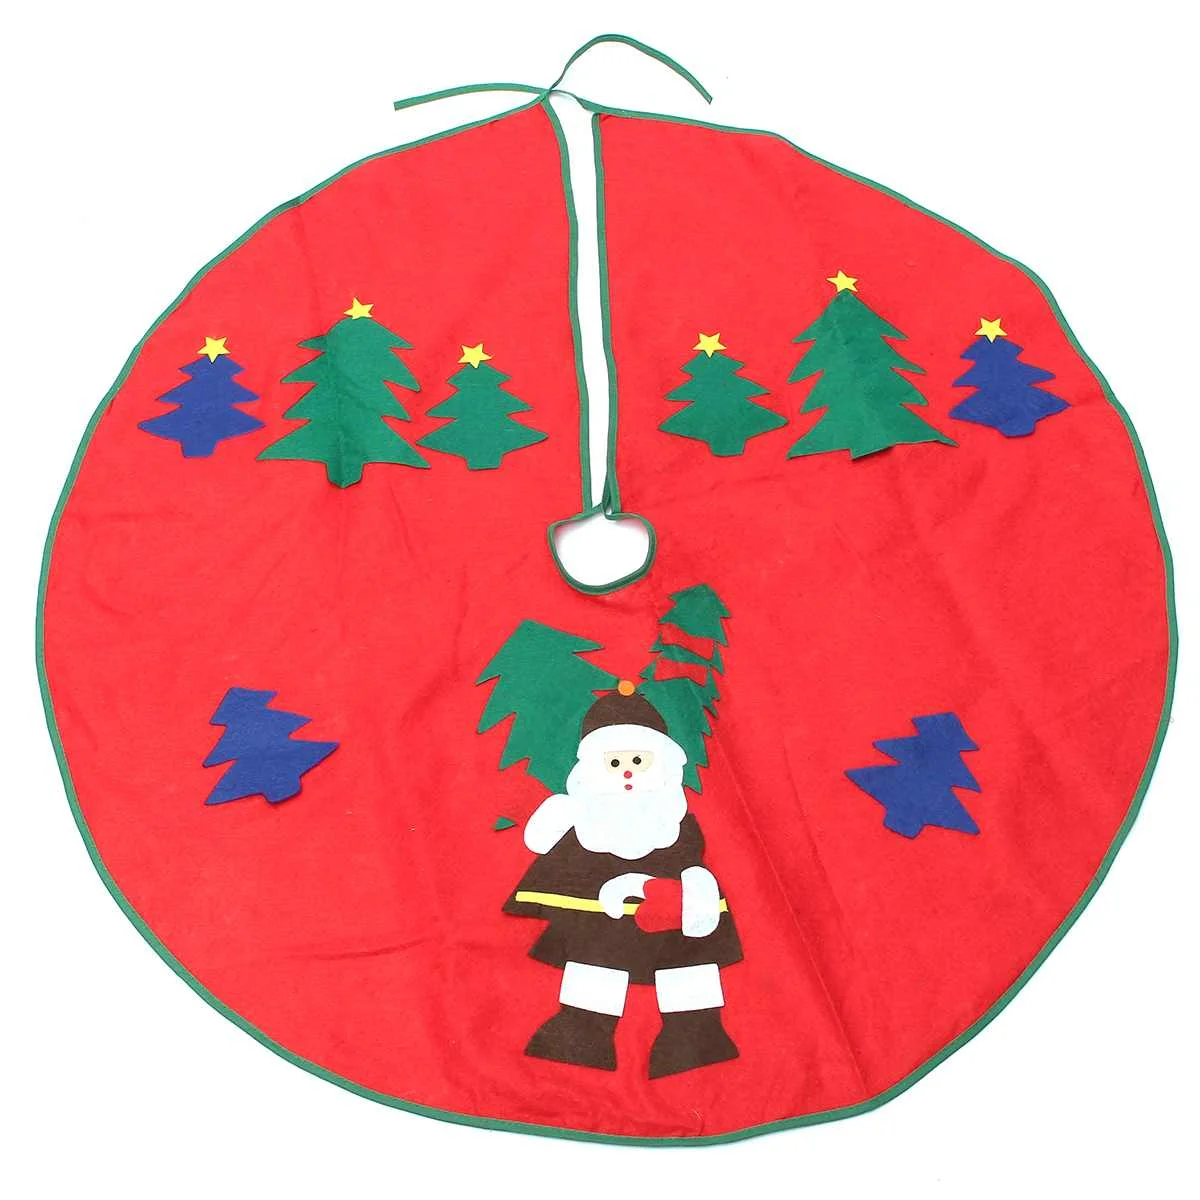 90 см с принтом рождественской елки, юбка, напольный коврик, покрытие, праздничное Рождественское украшение для дома, Елочное украшение - Цвет: Светло-серый